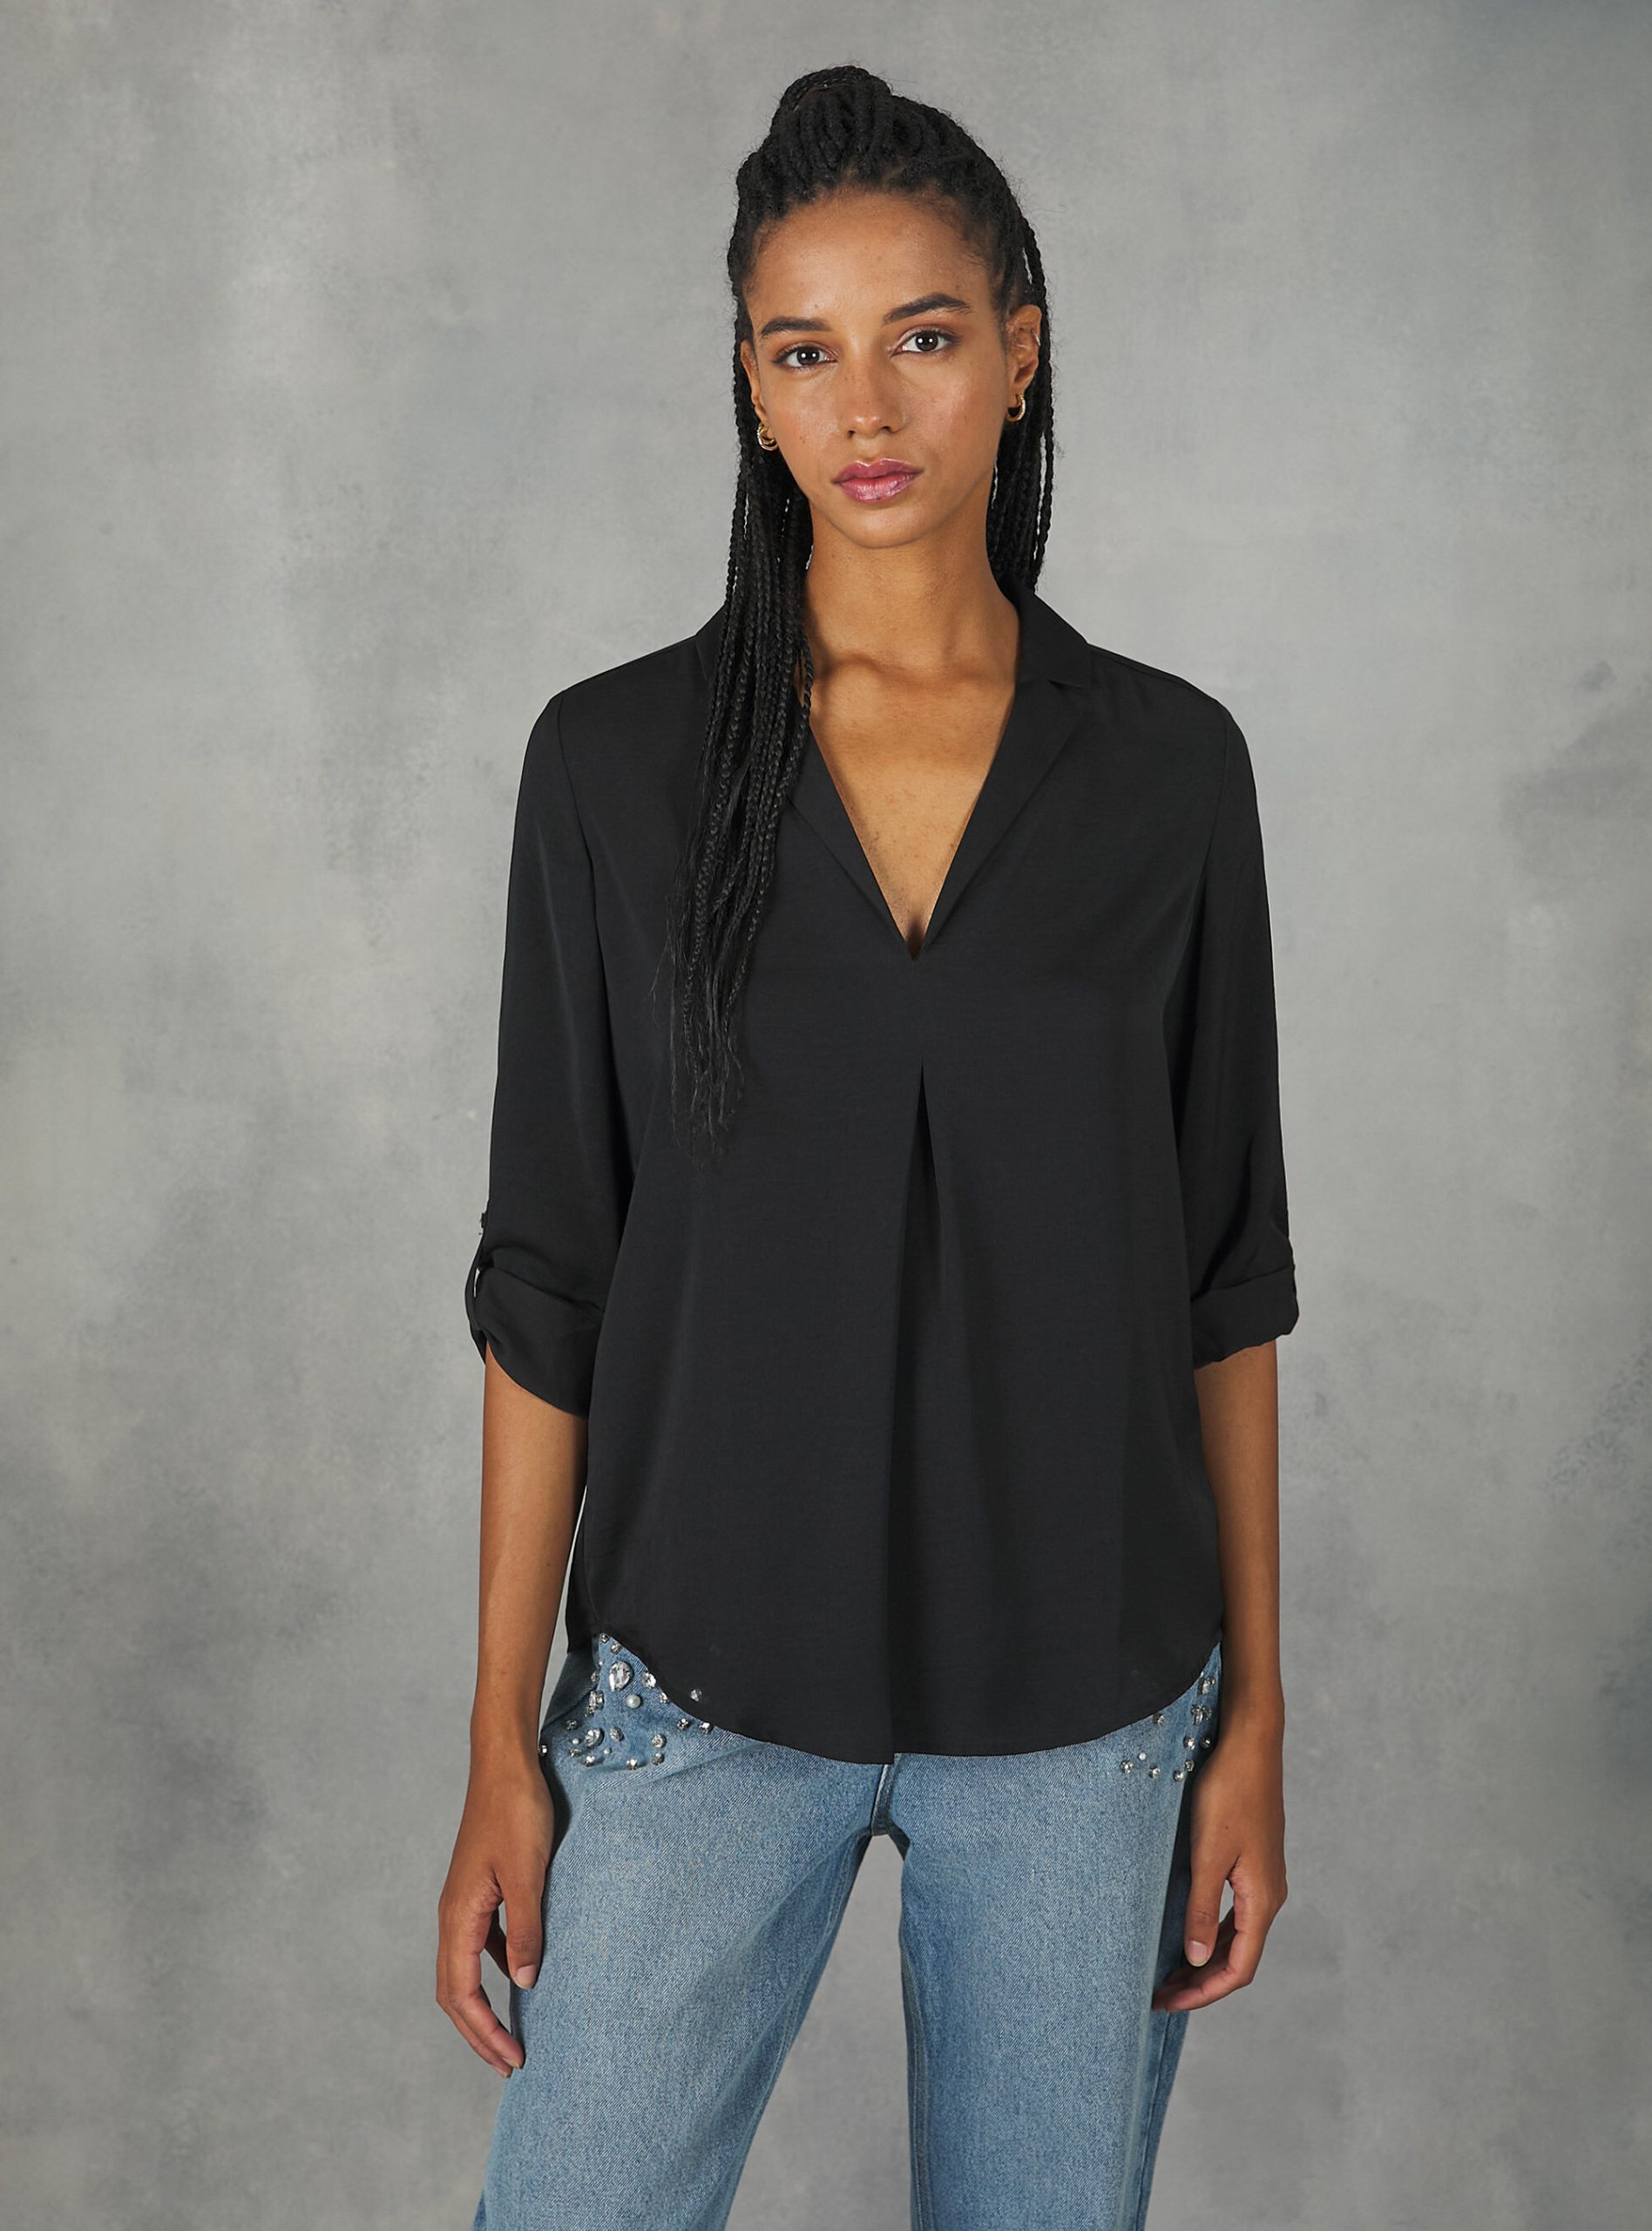 Frauen Hemden Bk1 Black Gut Alcott Plain-Coloured Blouse With Lapel Neckline – 1